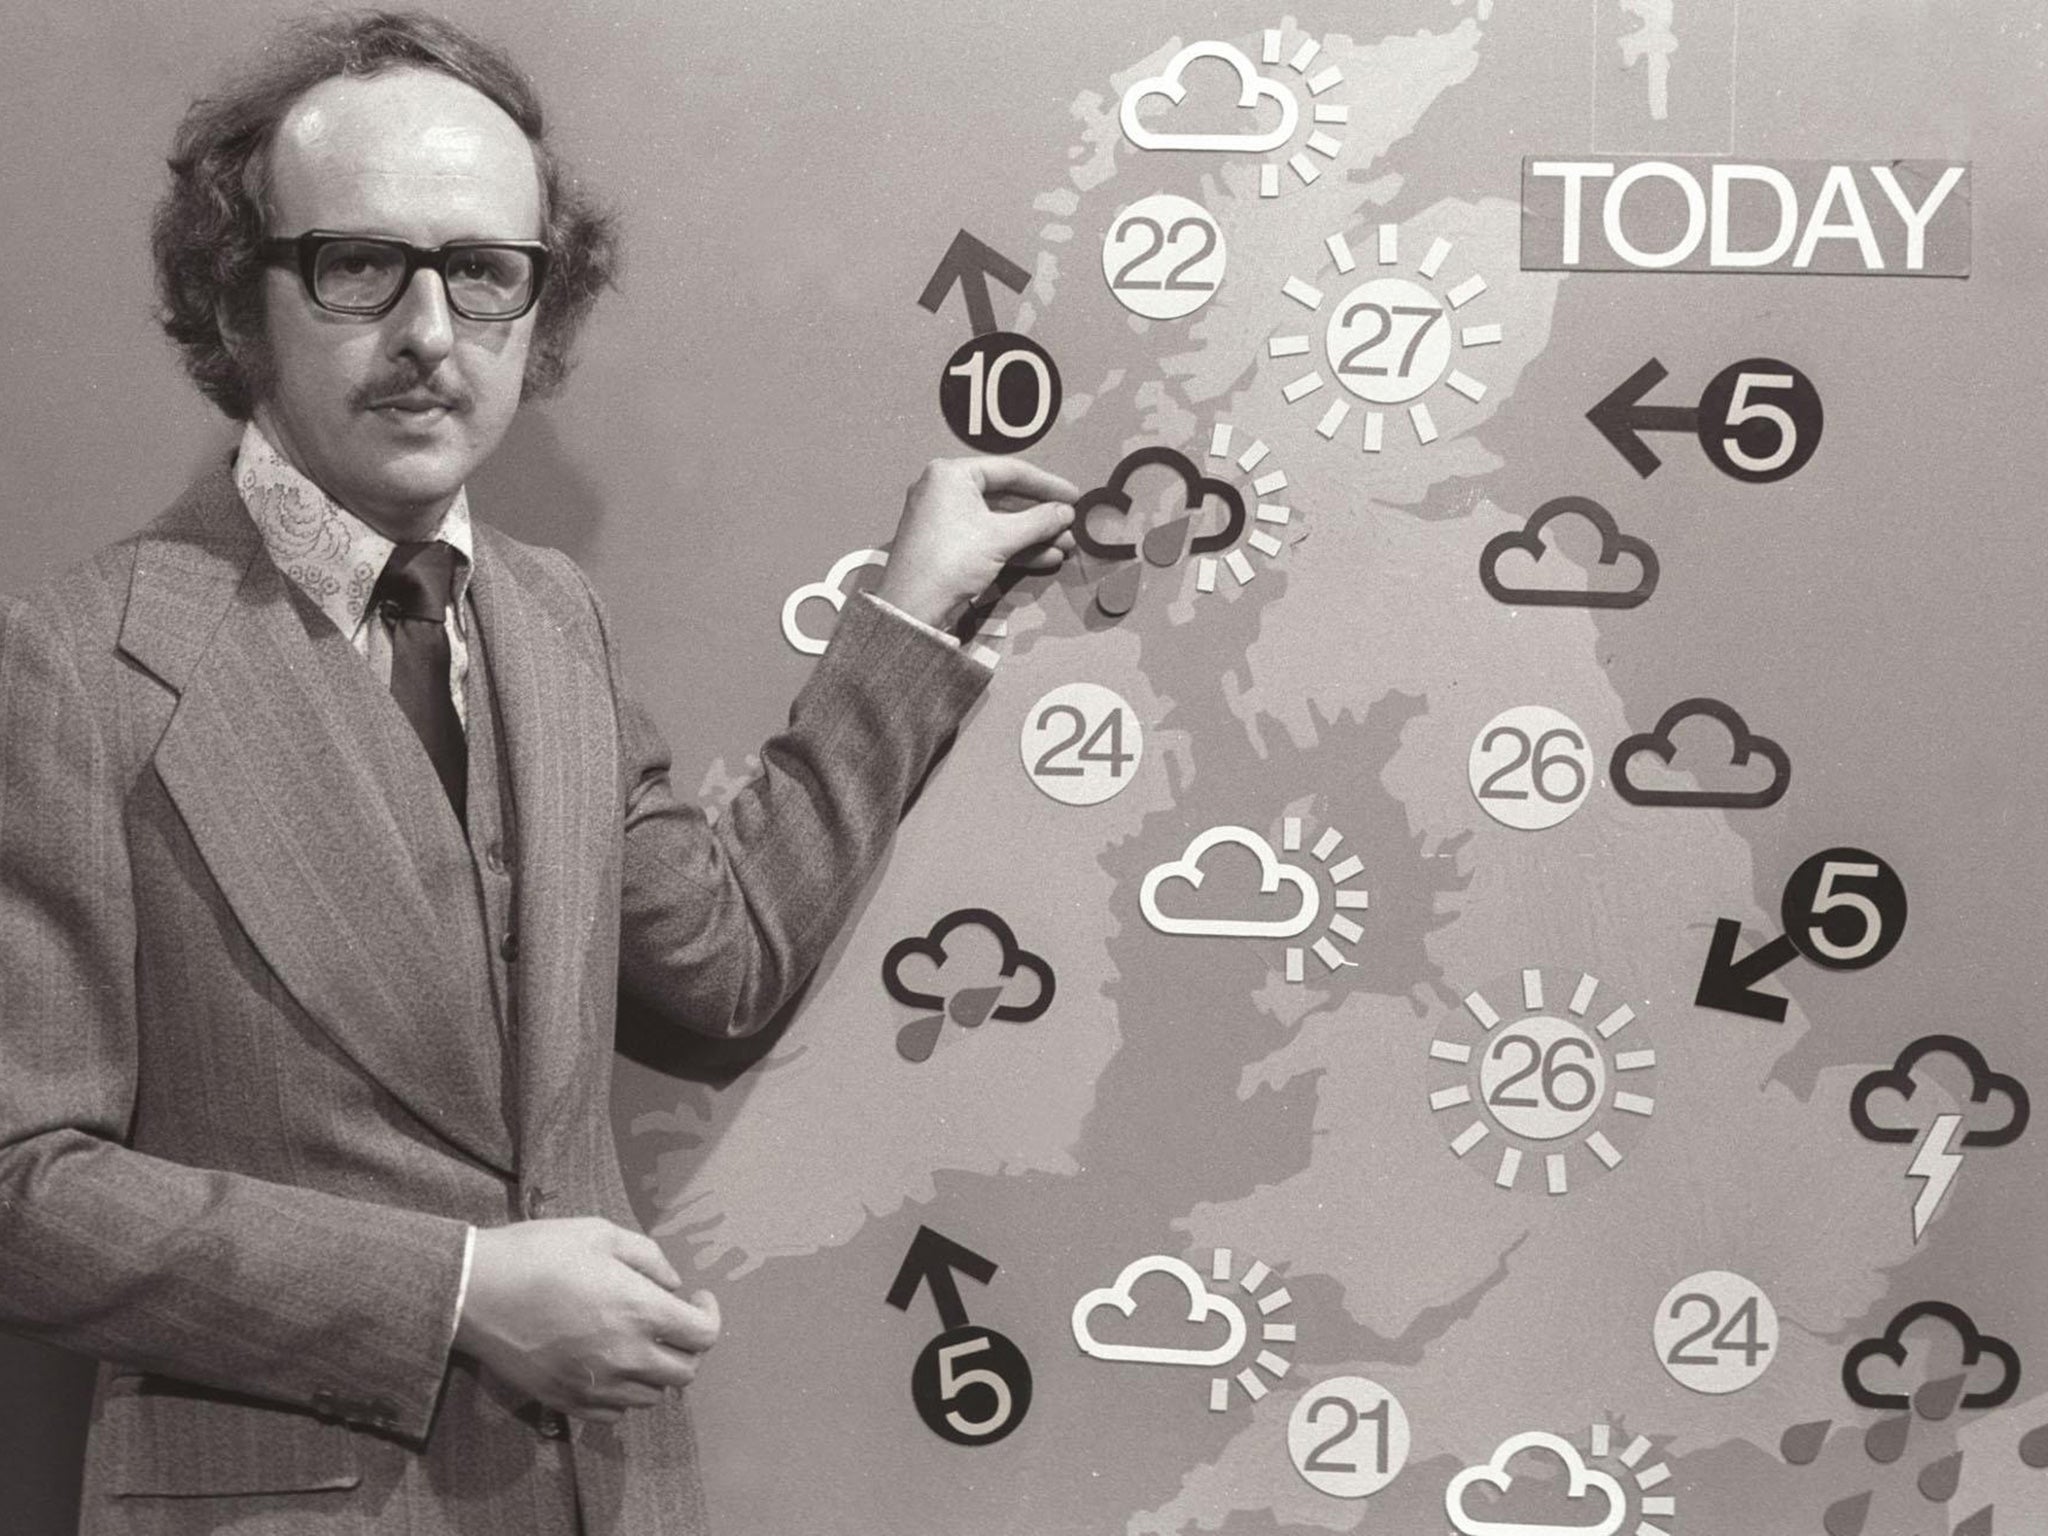 Darkening skies: Britain’s longest-serving TV weatherman Michael Fish, broadcasting in 1975